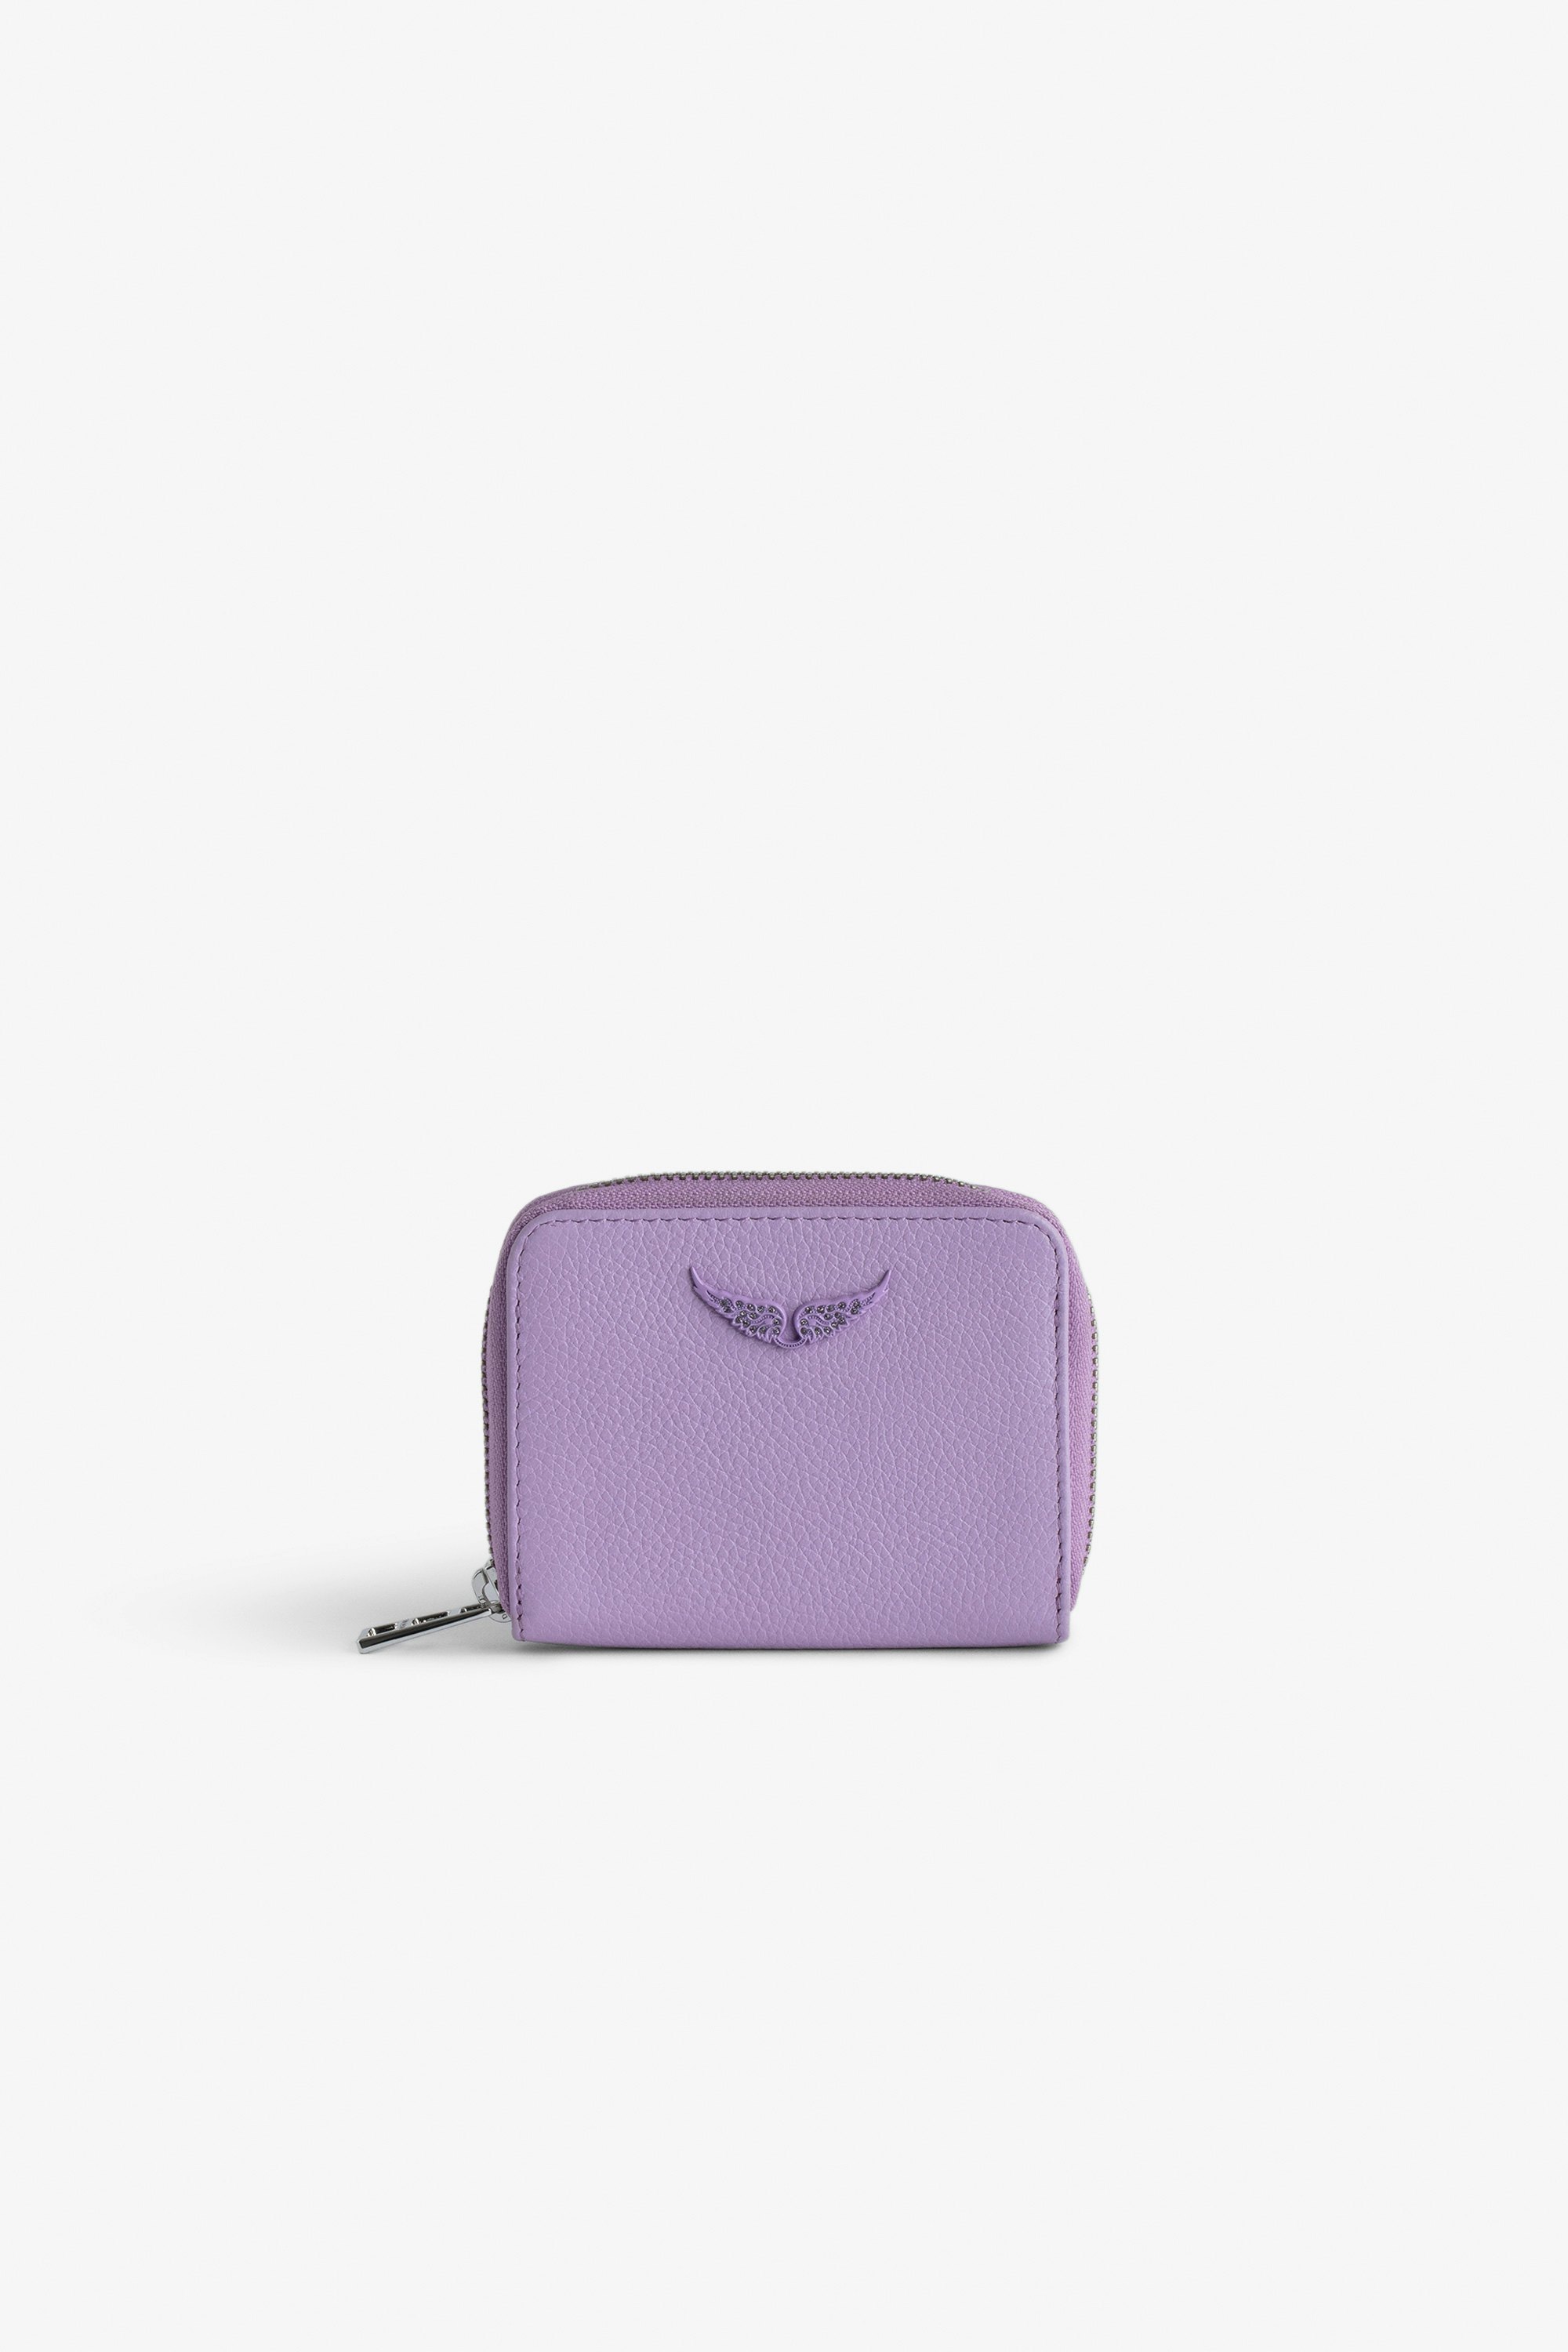 Geldbörse Mini ZV - Violette Geldbörse aus genarbtem Leder mit strassverziertem Fügel-Charm.